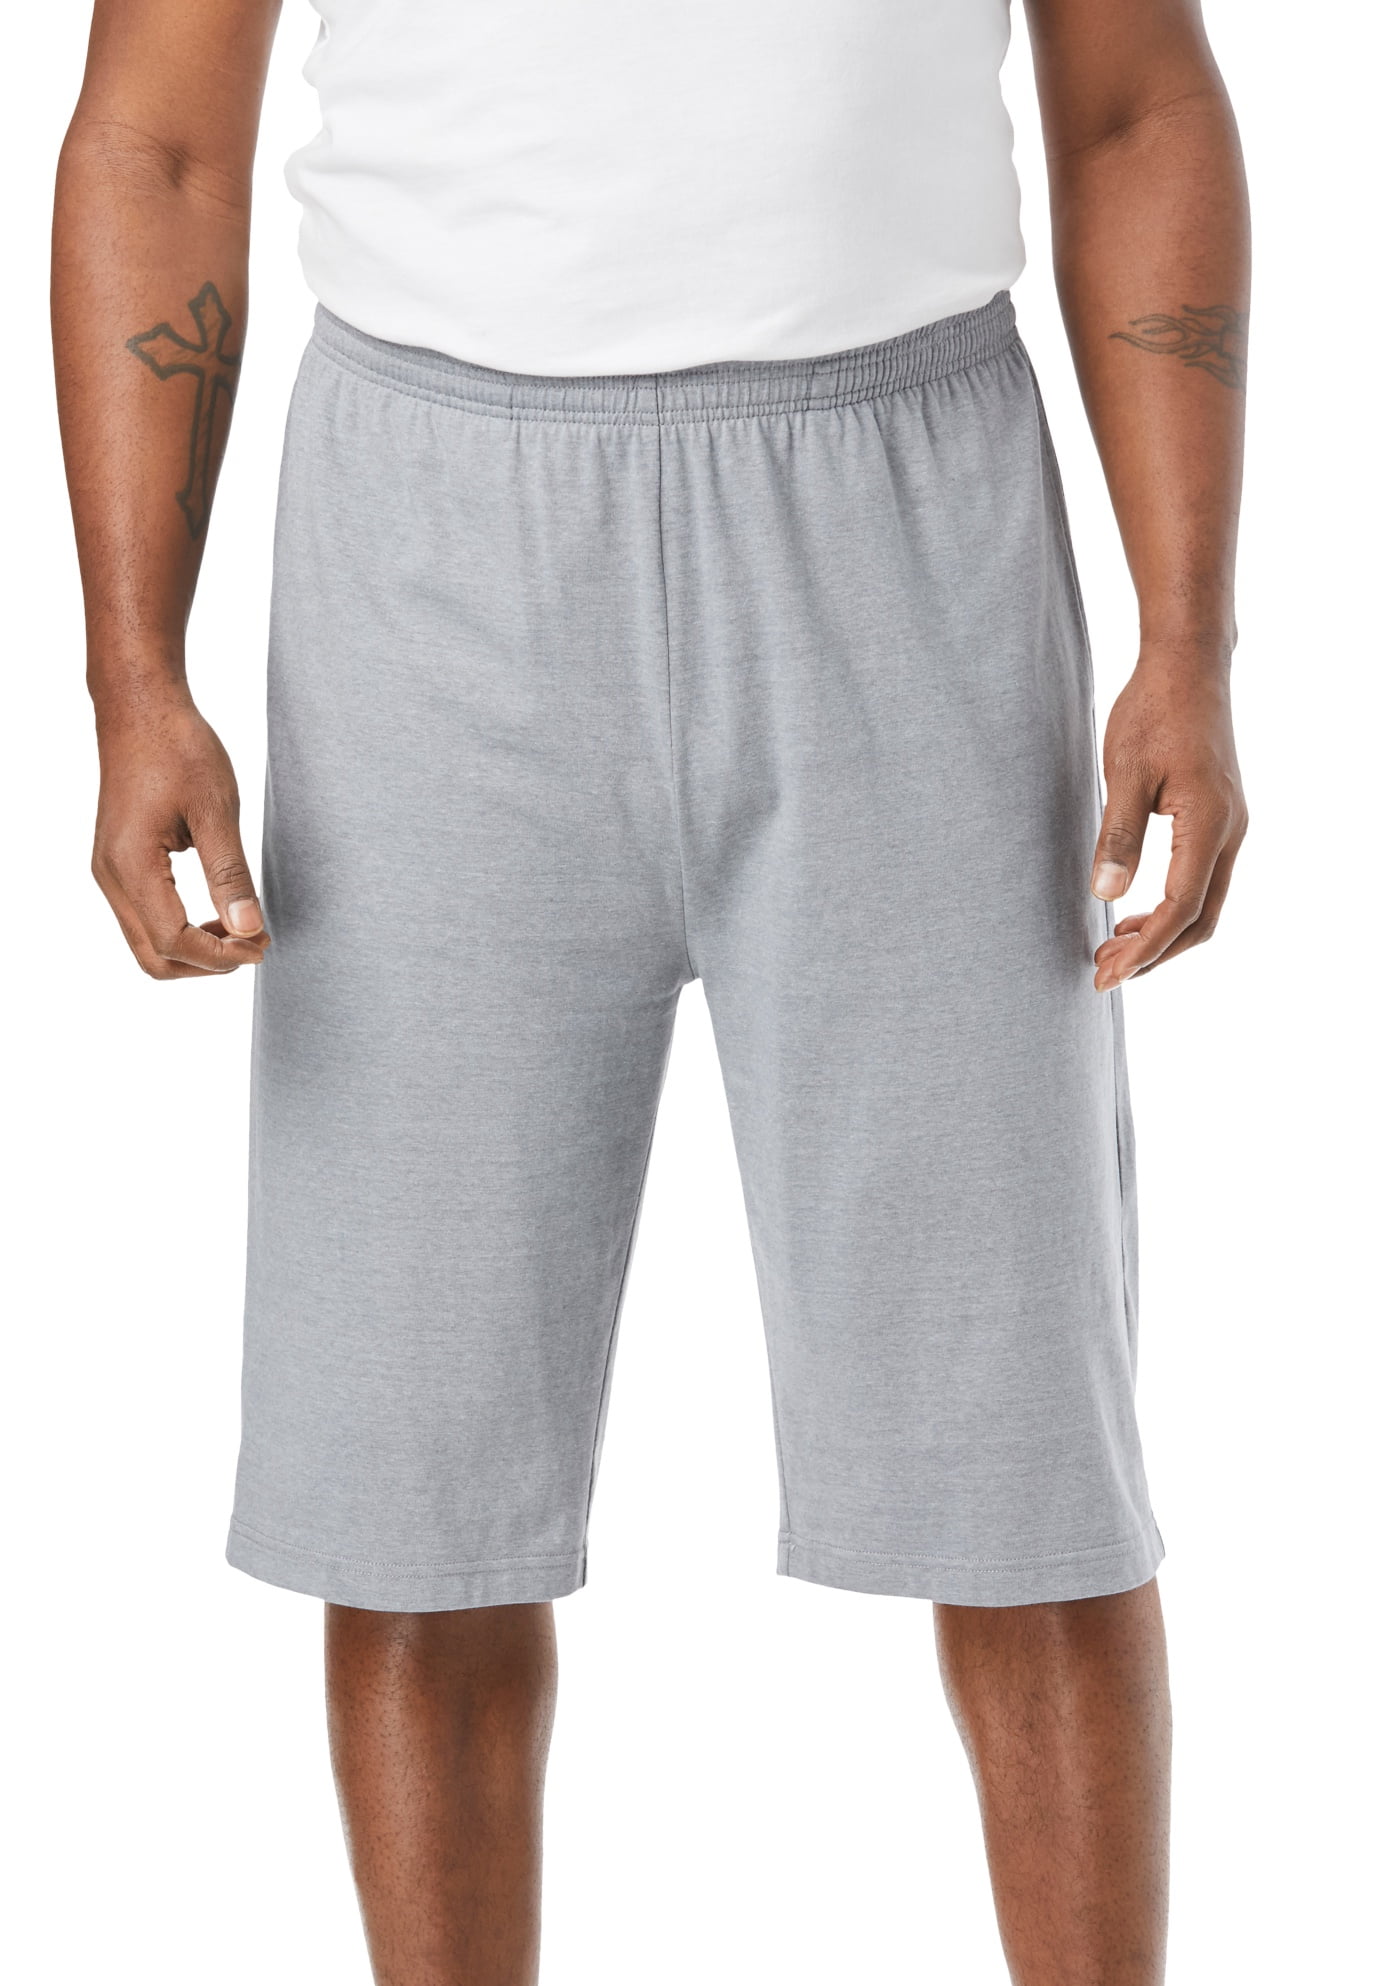 kaldenavn Alert ø Kingsize Men's Big & Tall Lightweight Extra Long Jersey Shorts - Walmart.com